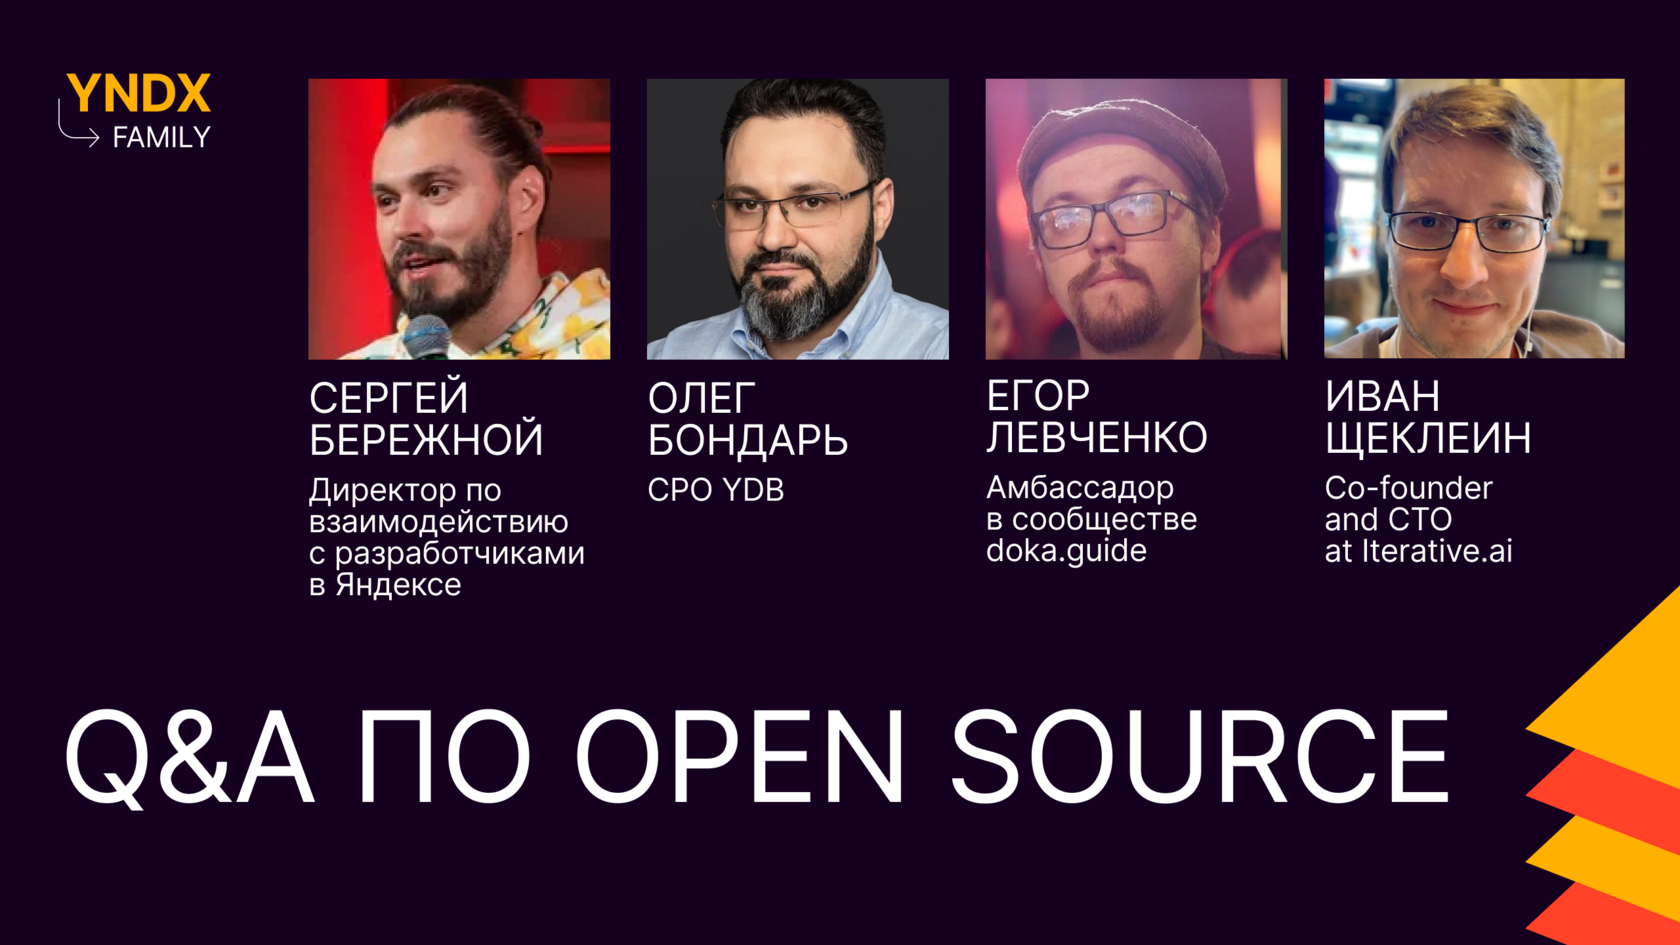 Круглый стол «Q&amp;amp;amp;A по Open Source», где ведущие эксперты, включая Сергея Бережного из Яндекса, раскрывают секреты успешных опенсорс проектов и стратегии их монетизации.